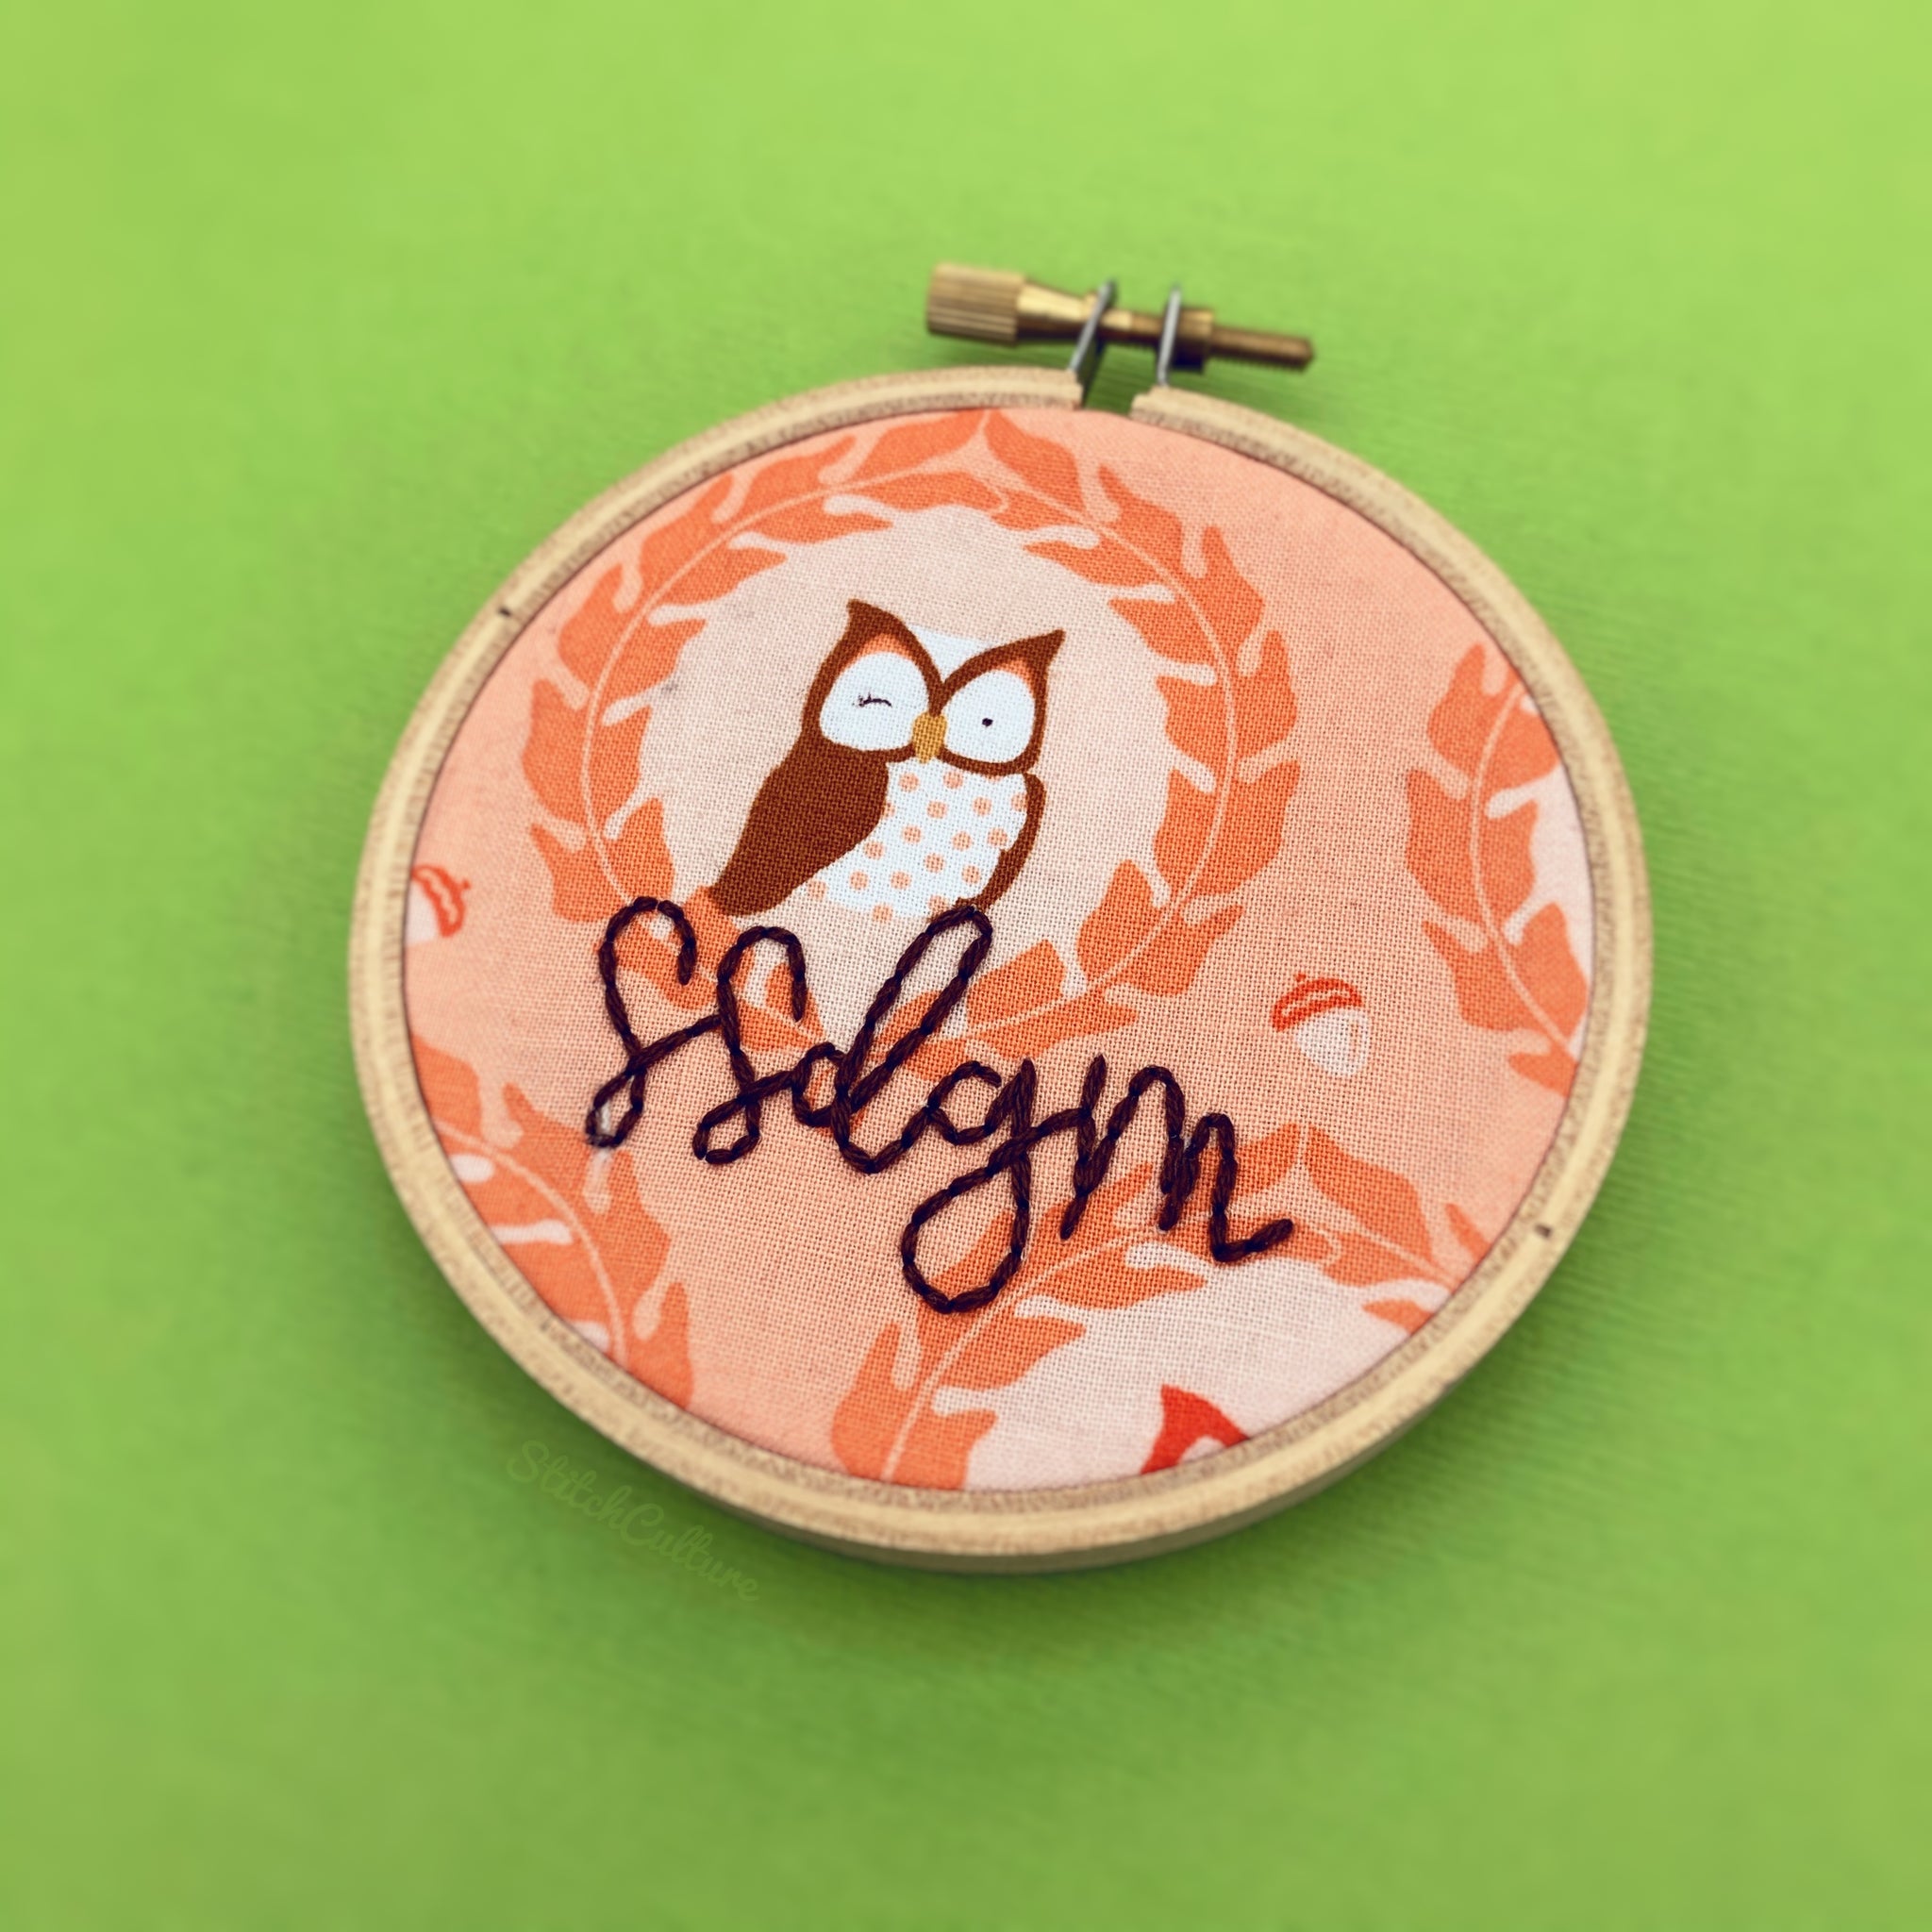 SSDGM / My Favorite Murder owl embroidery hoop